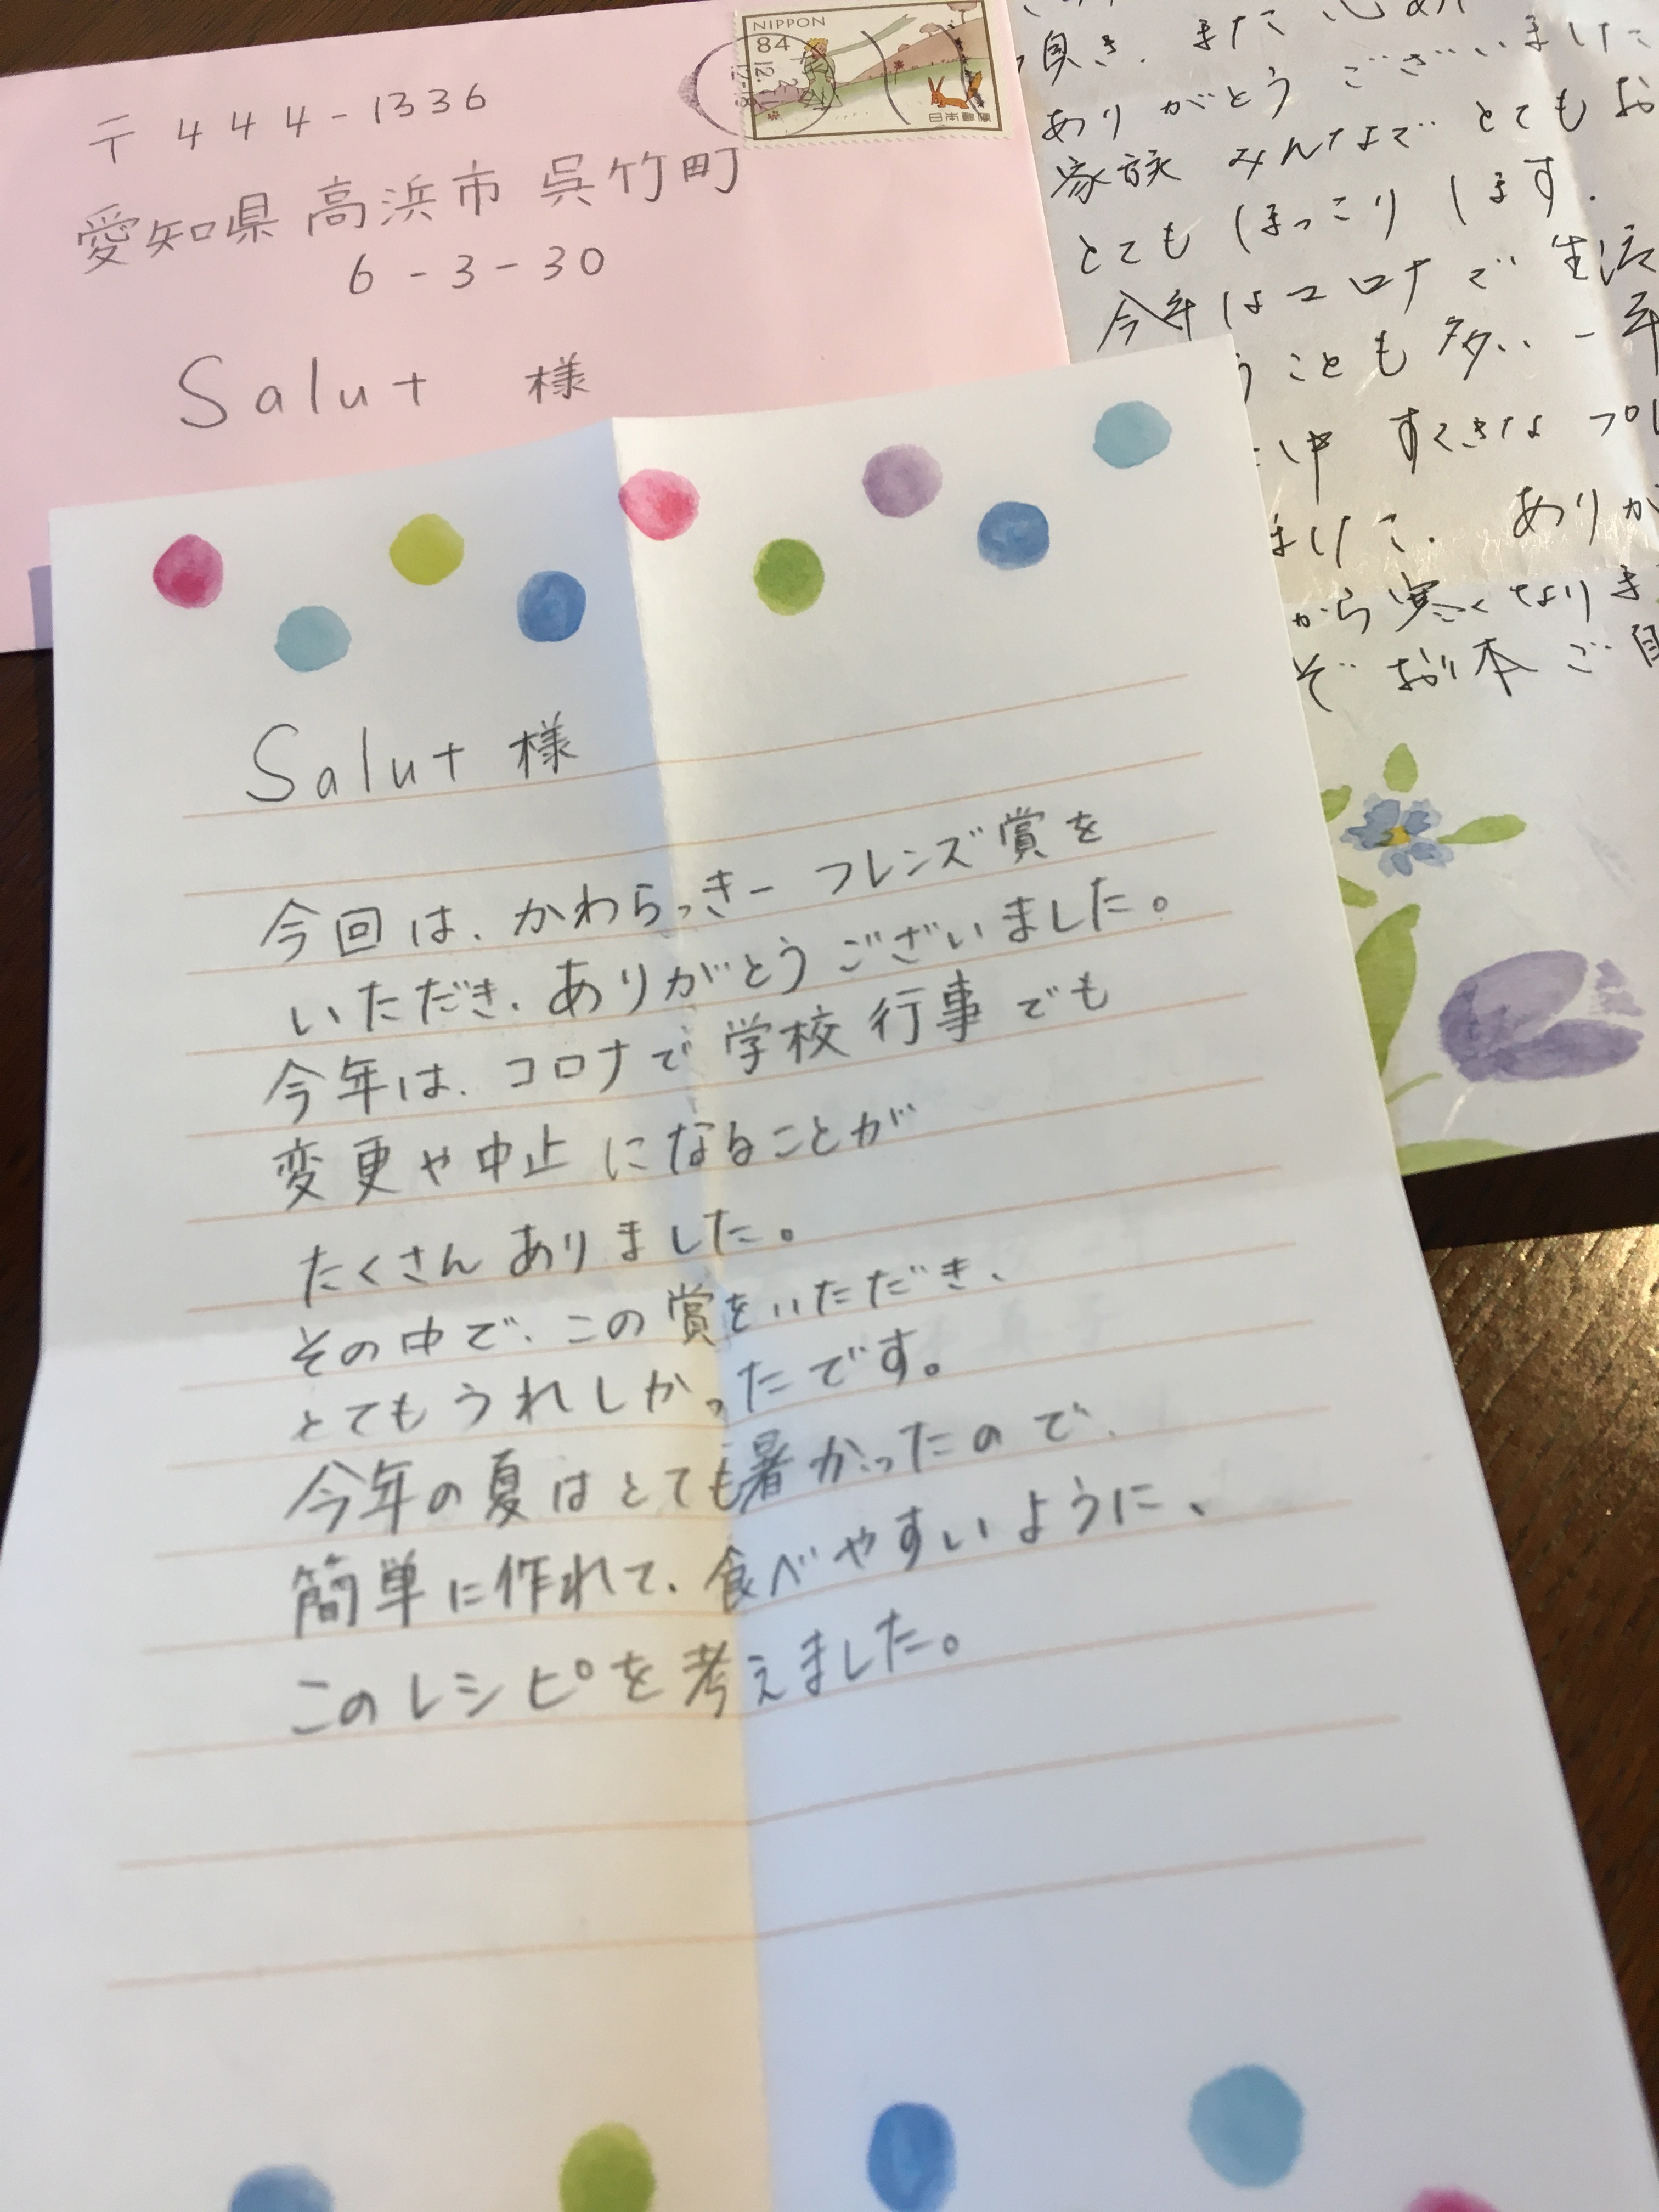 お手紙ありがとうございます。